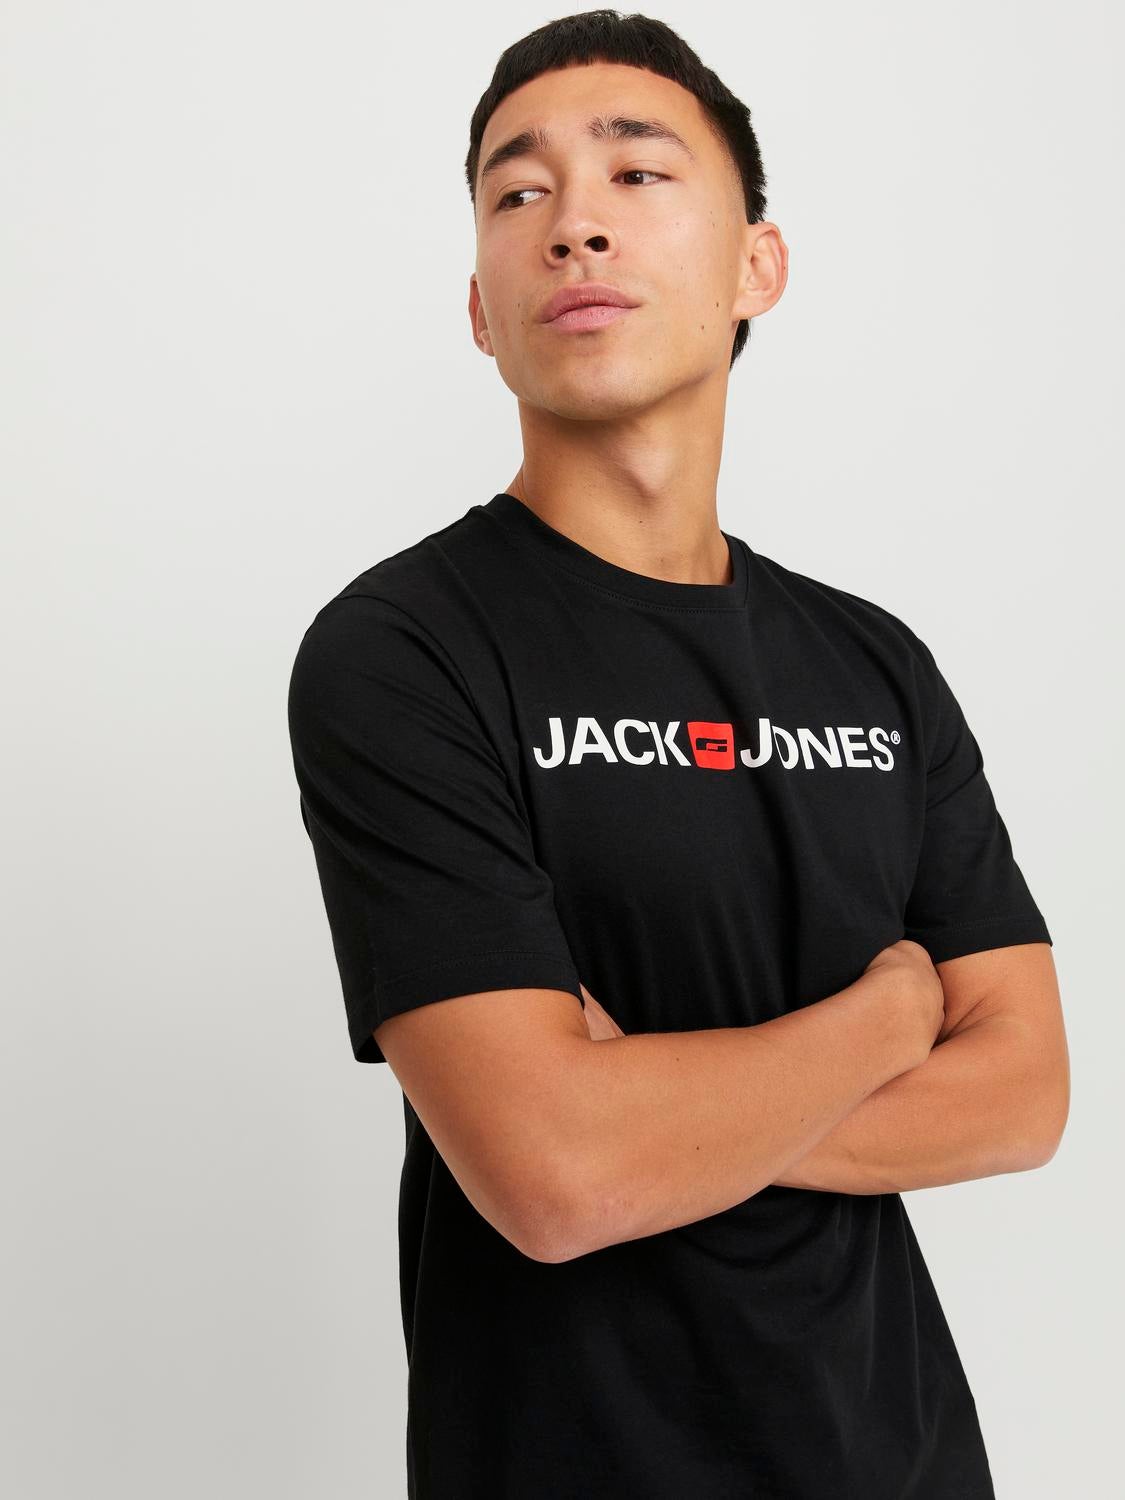 The Jack & jones online store on Dressinn